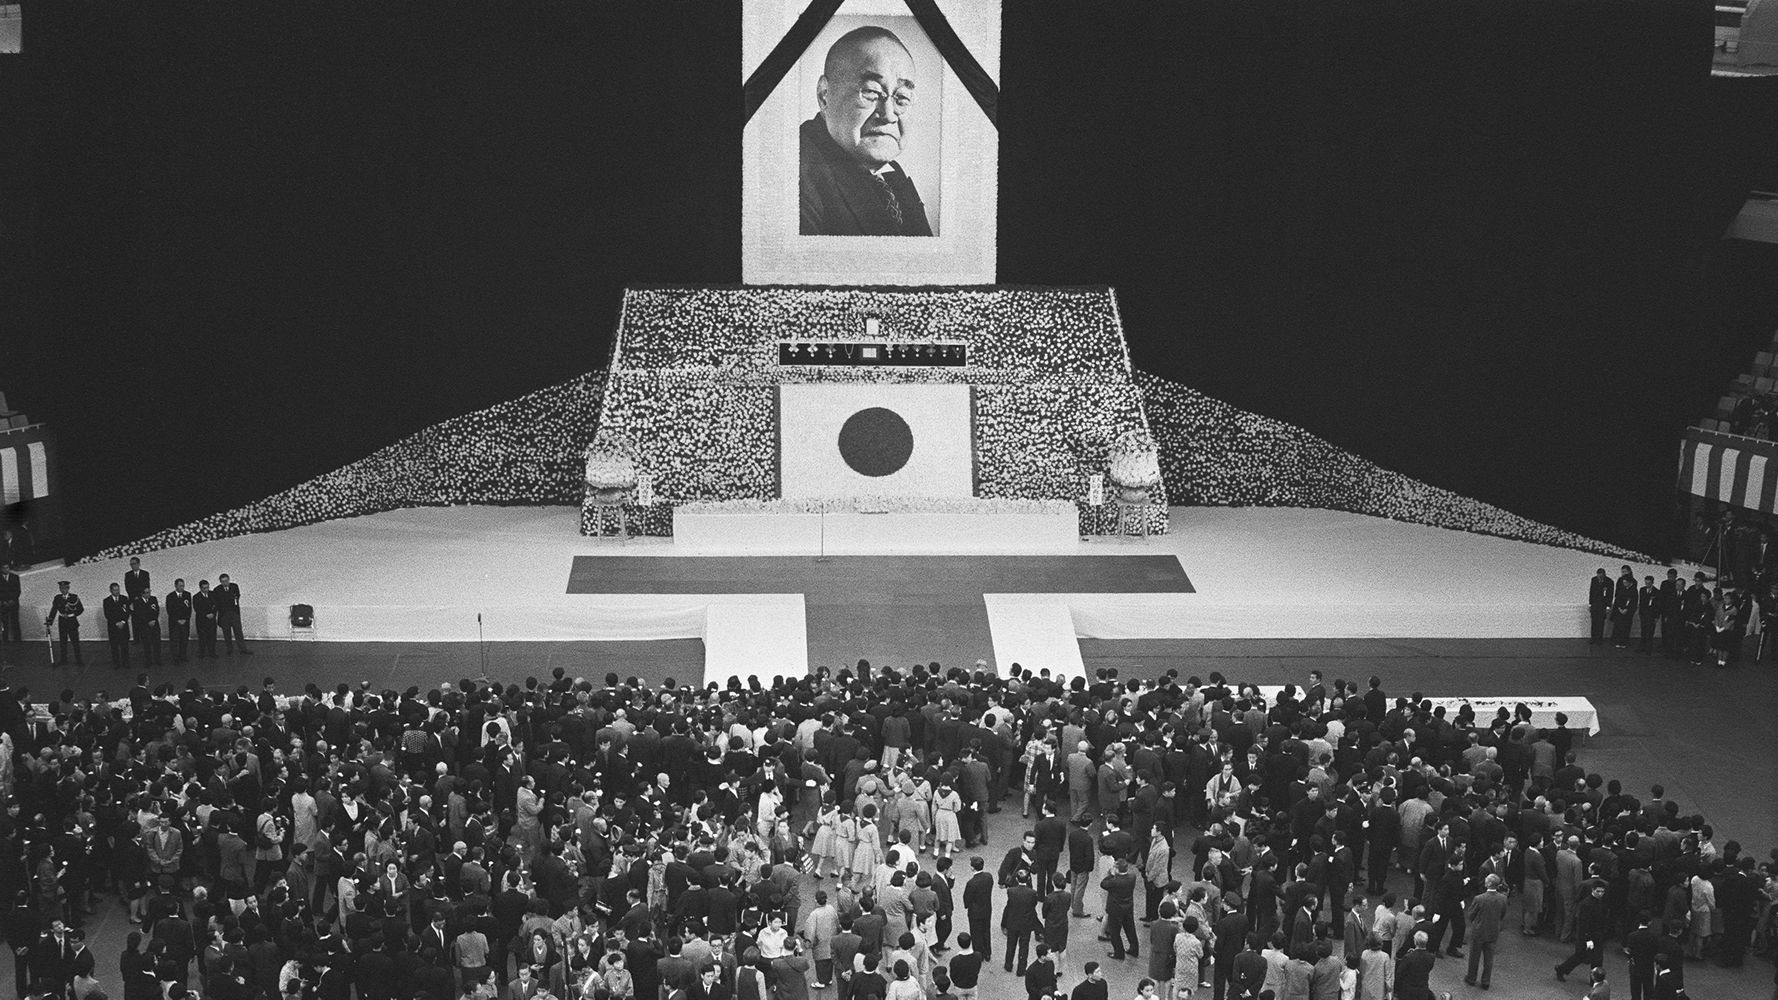 吉田茂氏の「国葬」はどんな様子だったのか。全国でサイレン、弔砲の発射も写真で振り返る